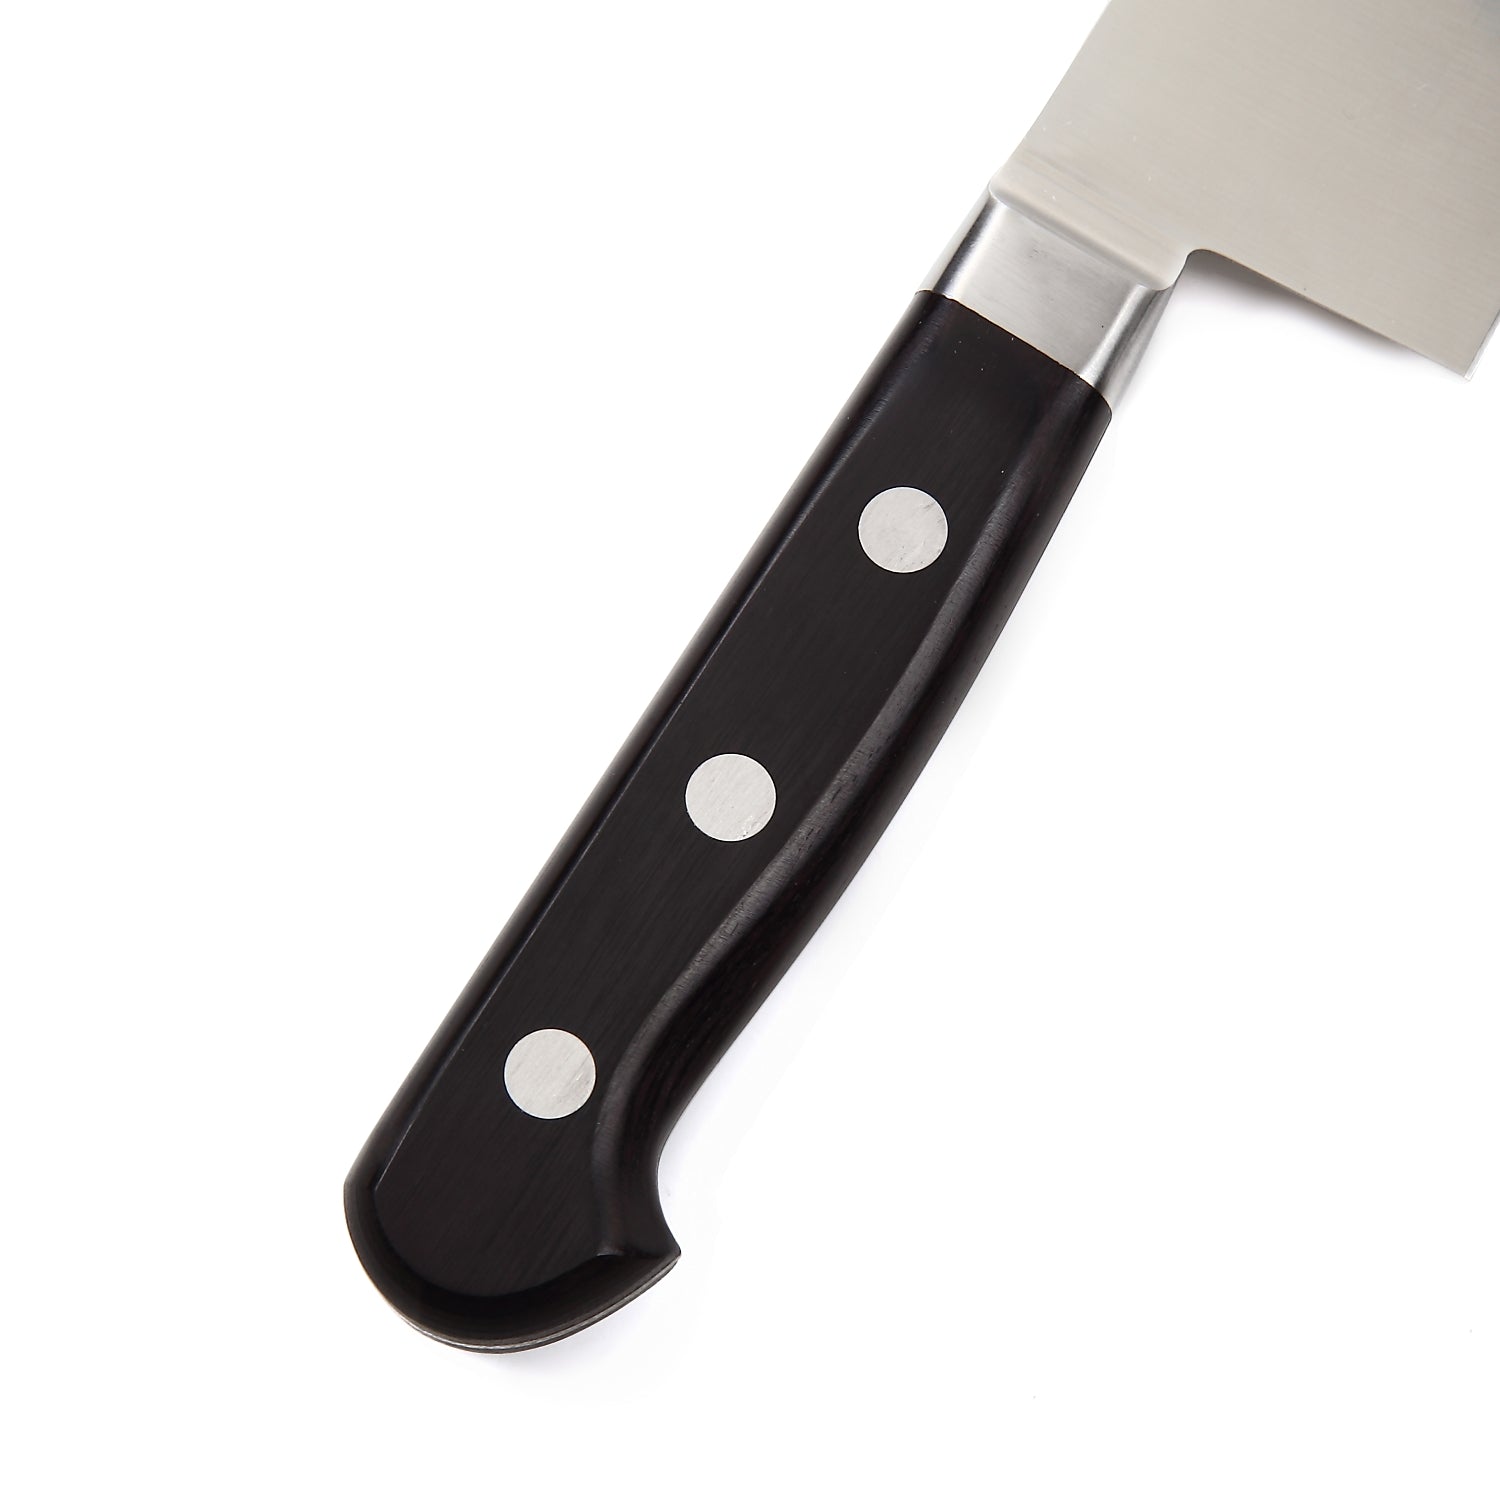 Syosaku Japanese Chef Knife INOX AUS-8A Stainless Steel Black Pakkawood Handle, Gyuto 8.3-inch (210mm)